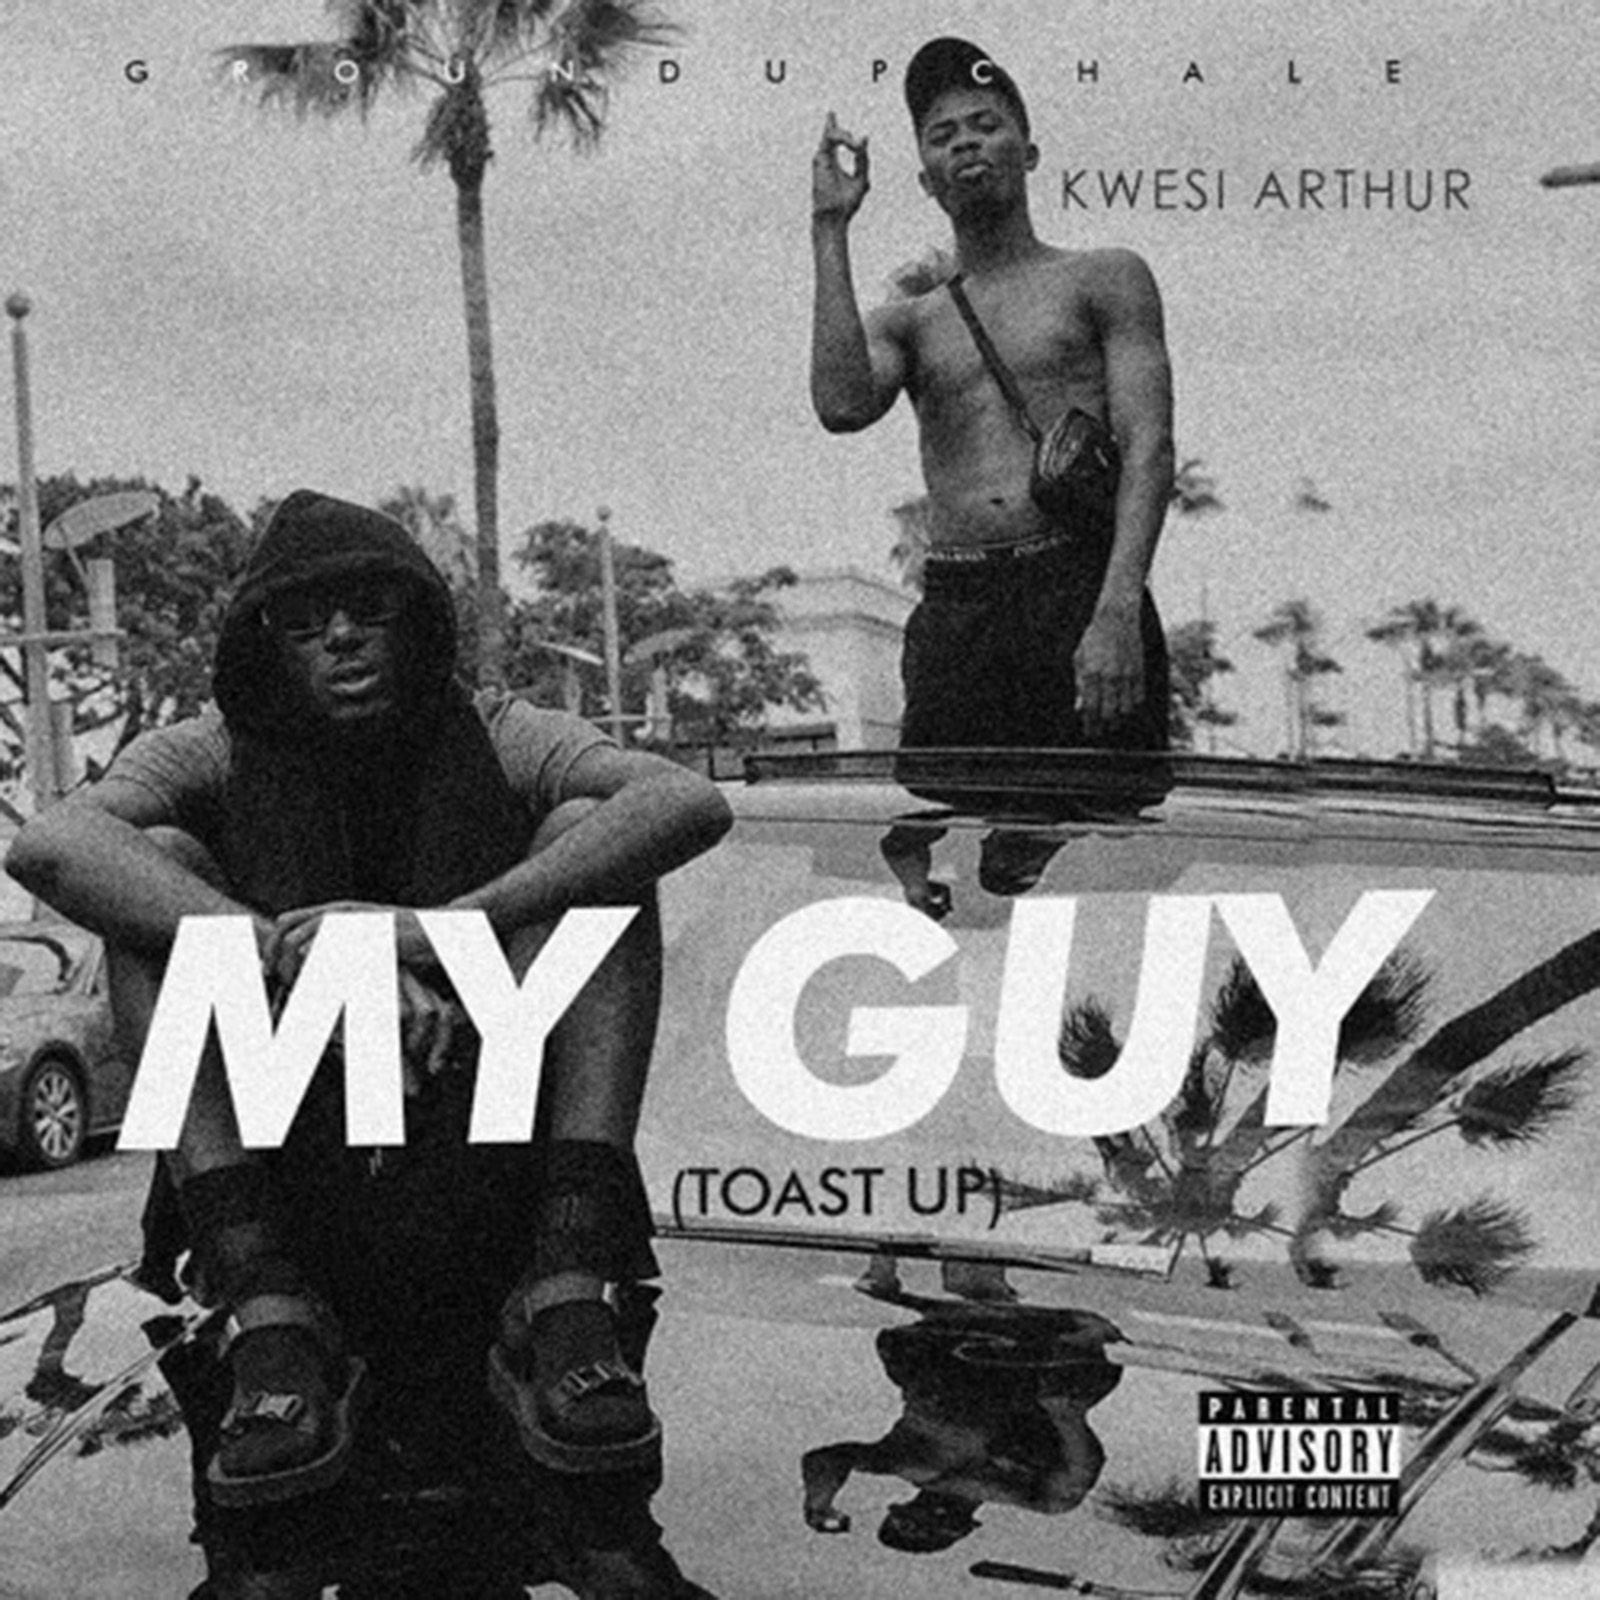 My Guy (Toast Up) by Kwesi Arthur